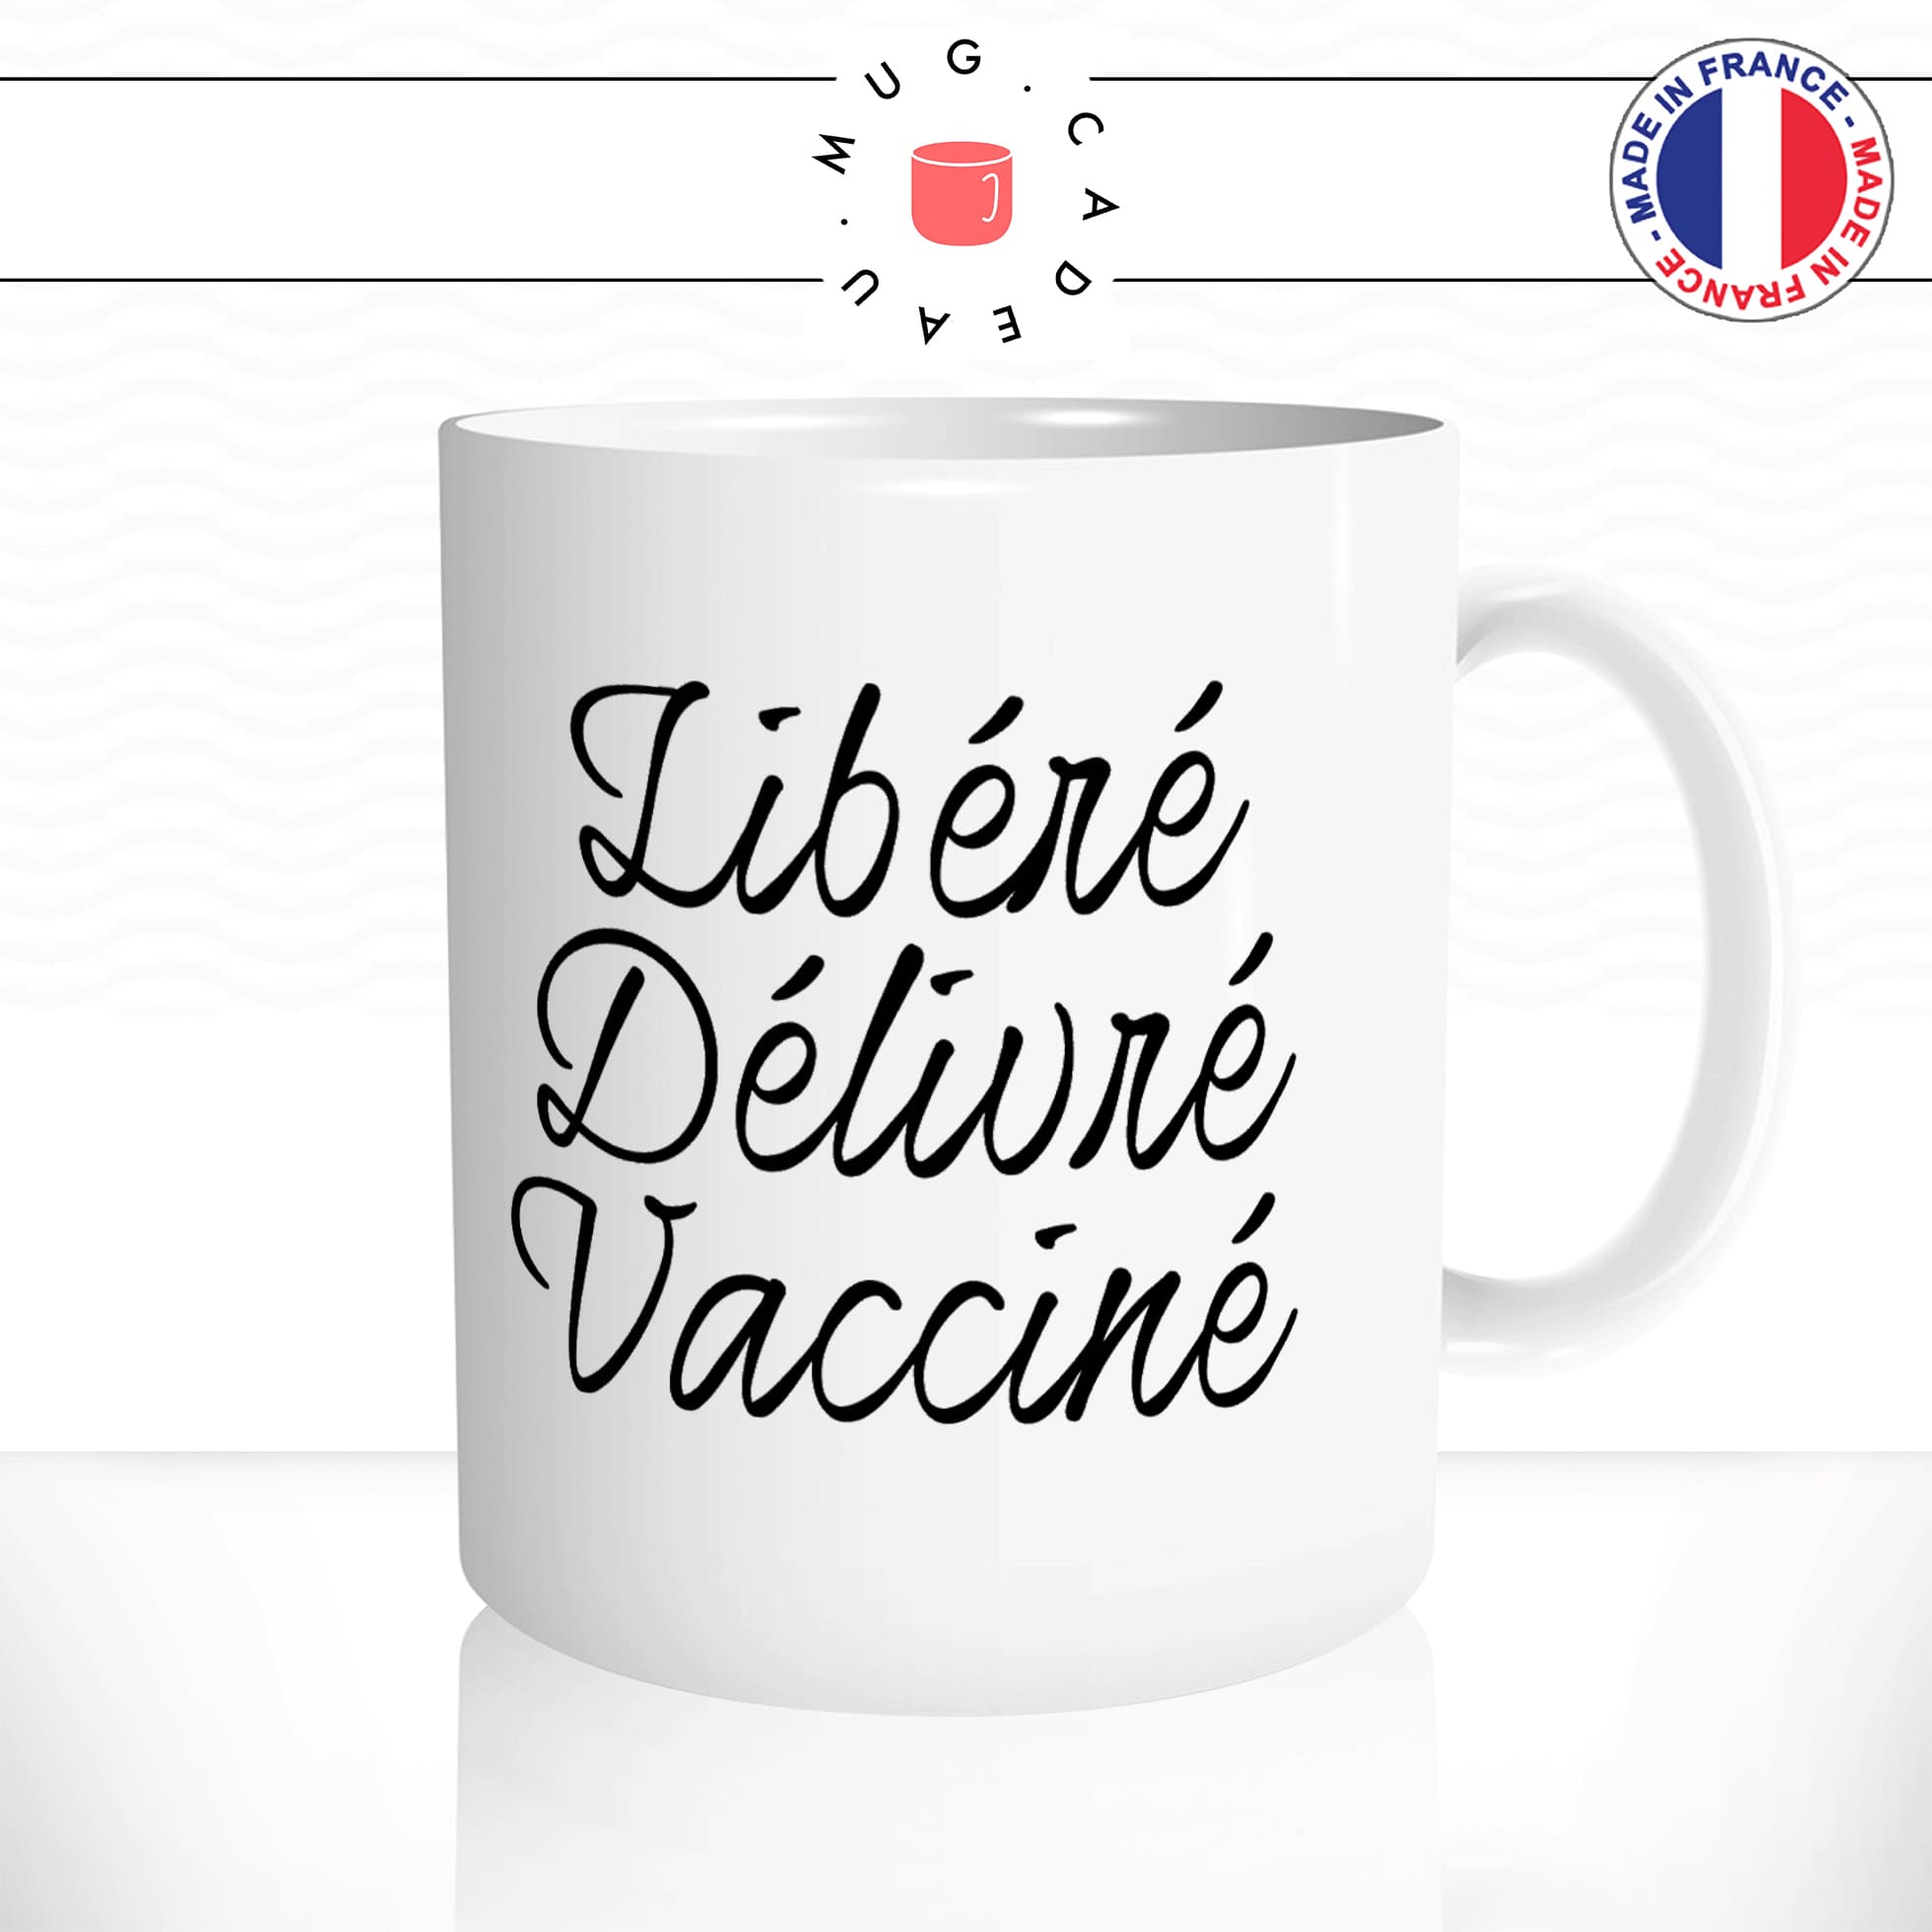 mug-tasse-blanc-unique-libéré-délivré-vacciné-vaccination-covid-homme-femme-parodie-humour-fun-cool-idée-cadeau-original-personnalisé2